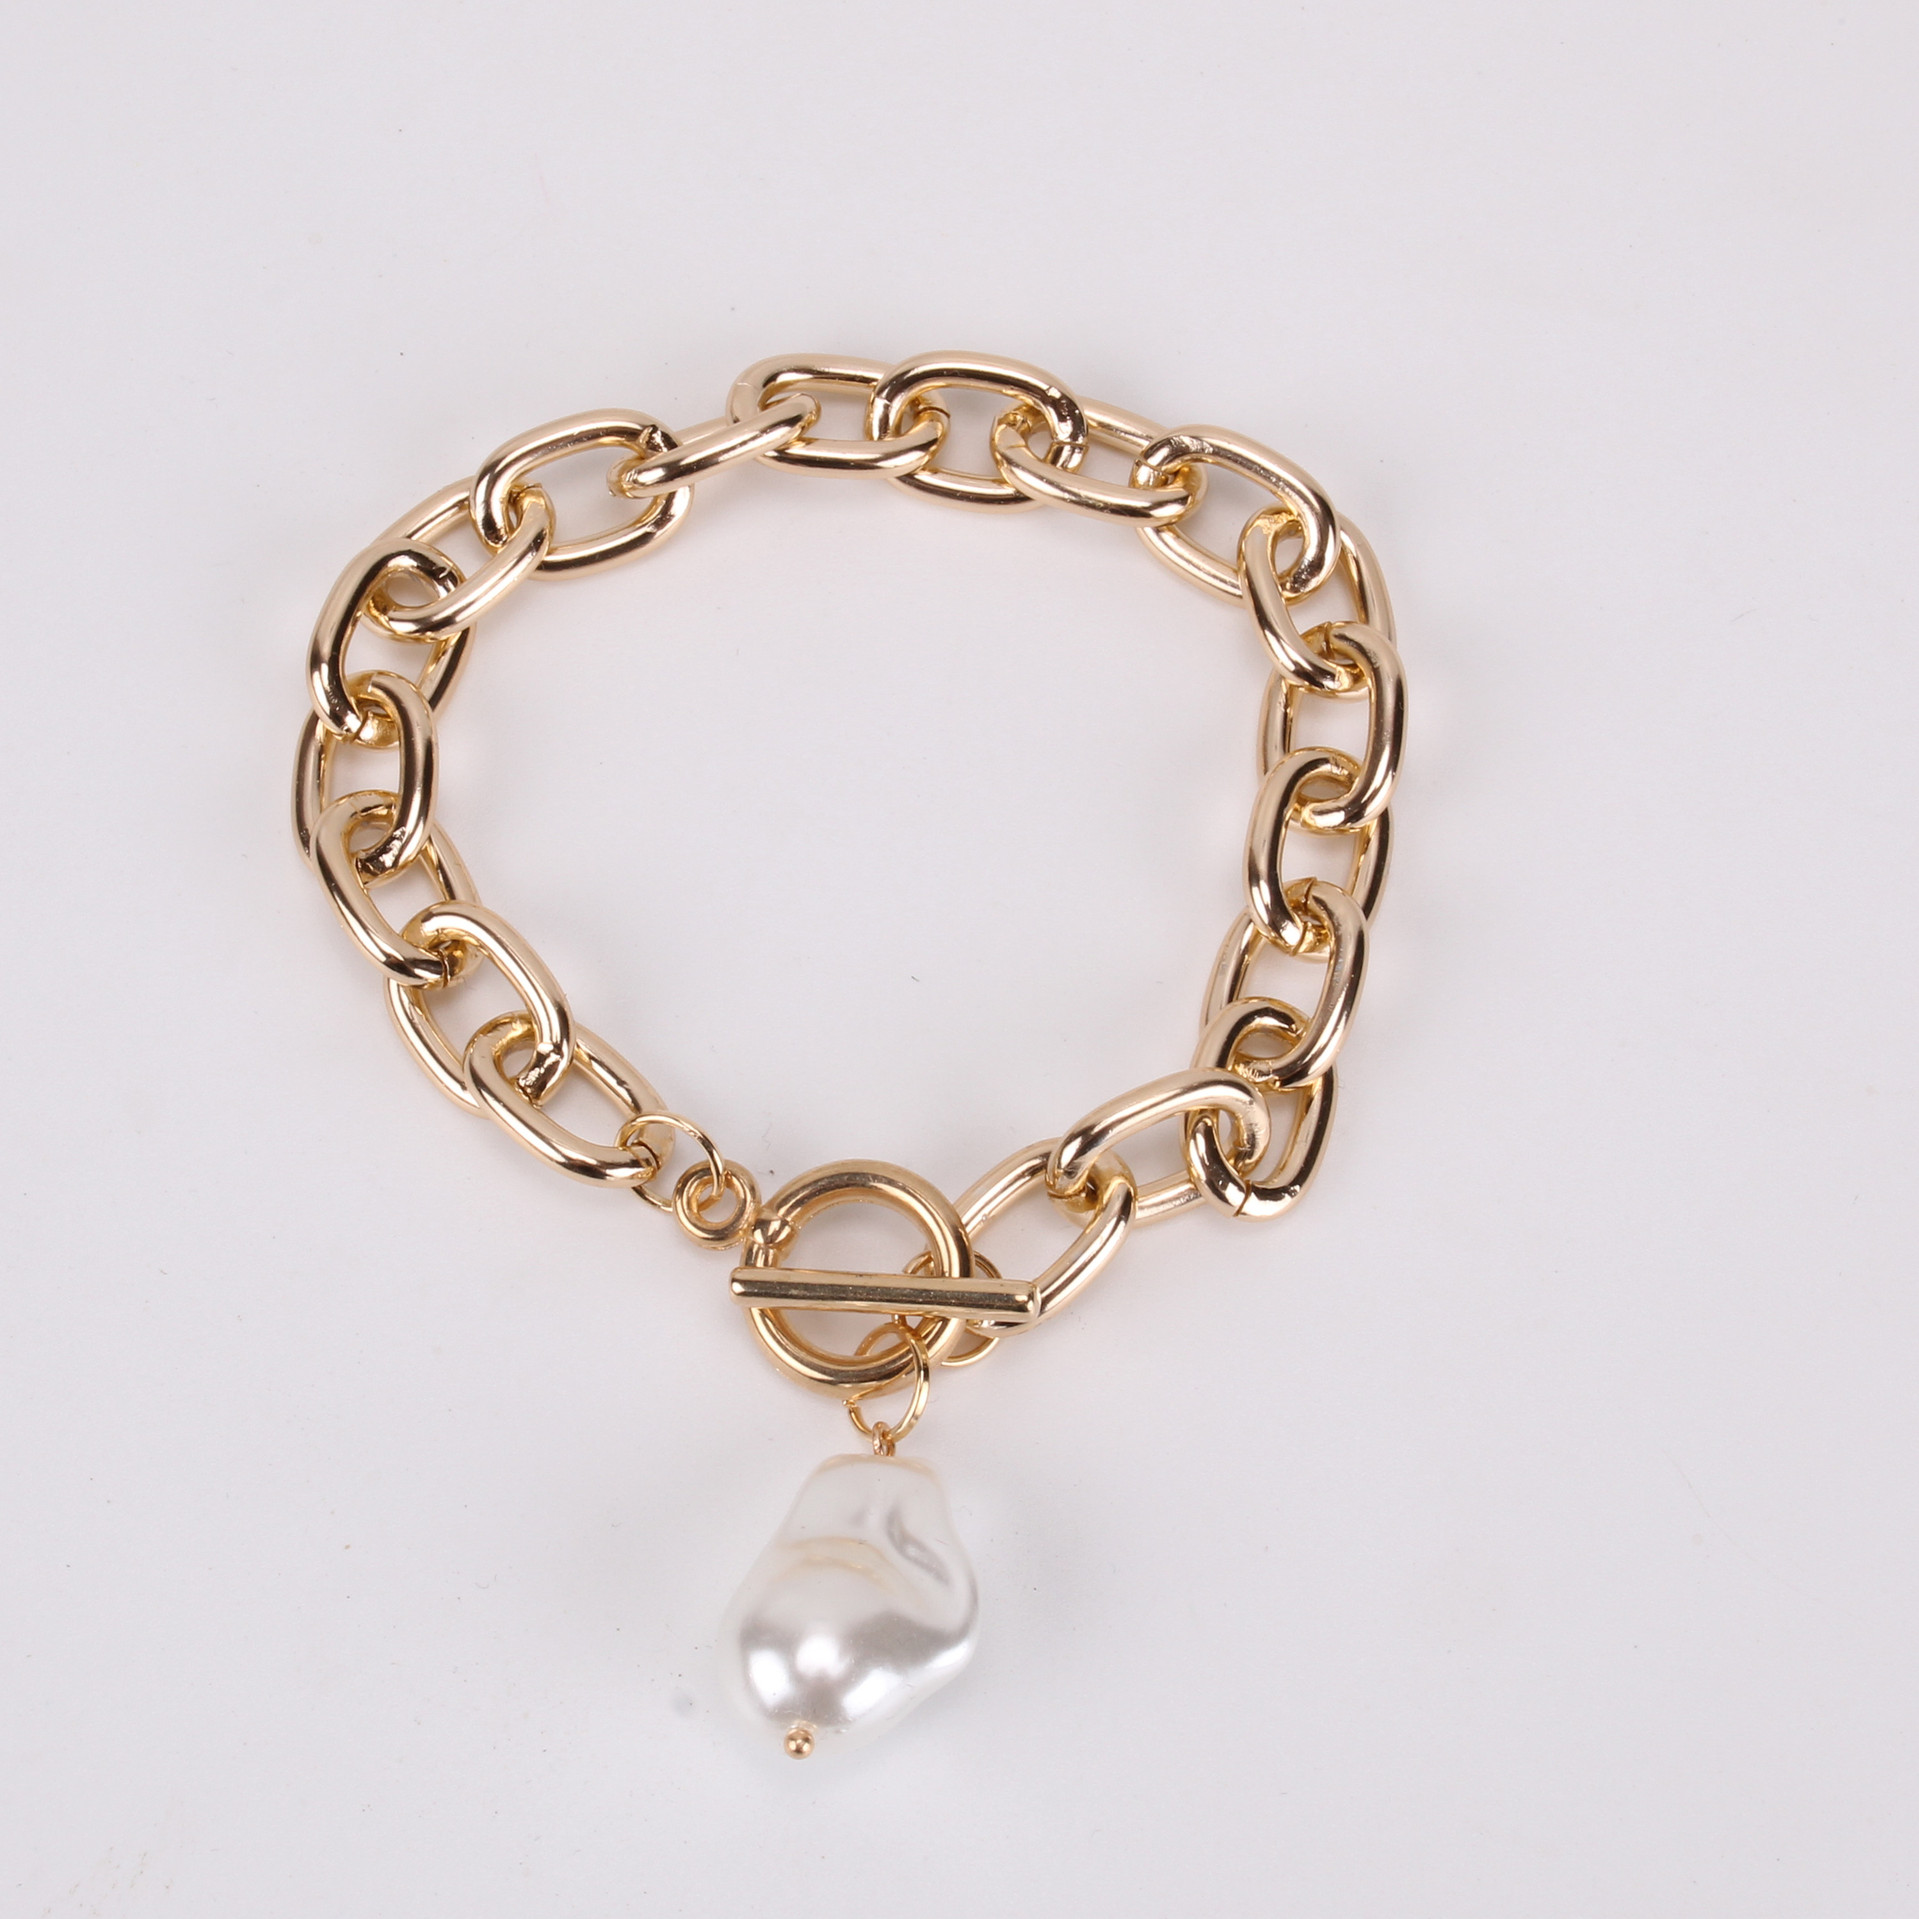 2:Cross chain bracelet